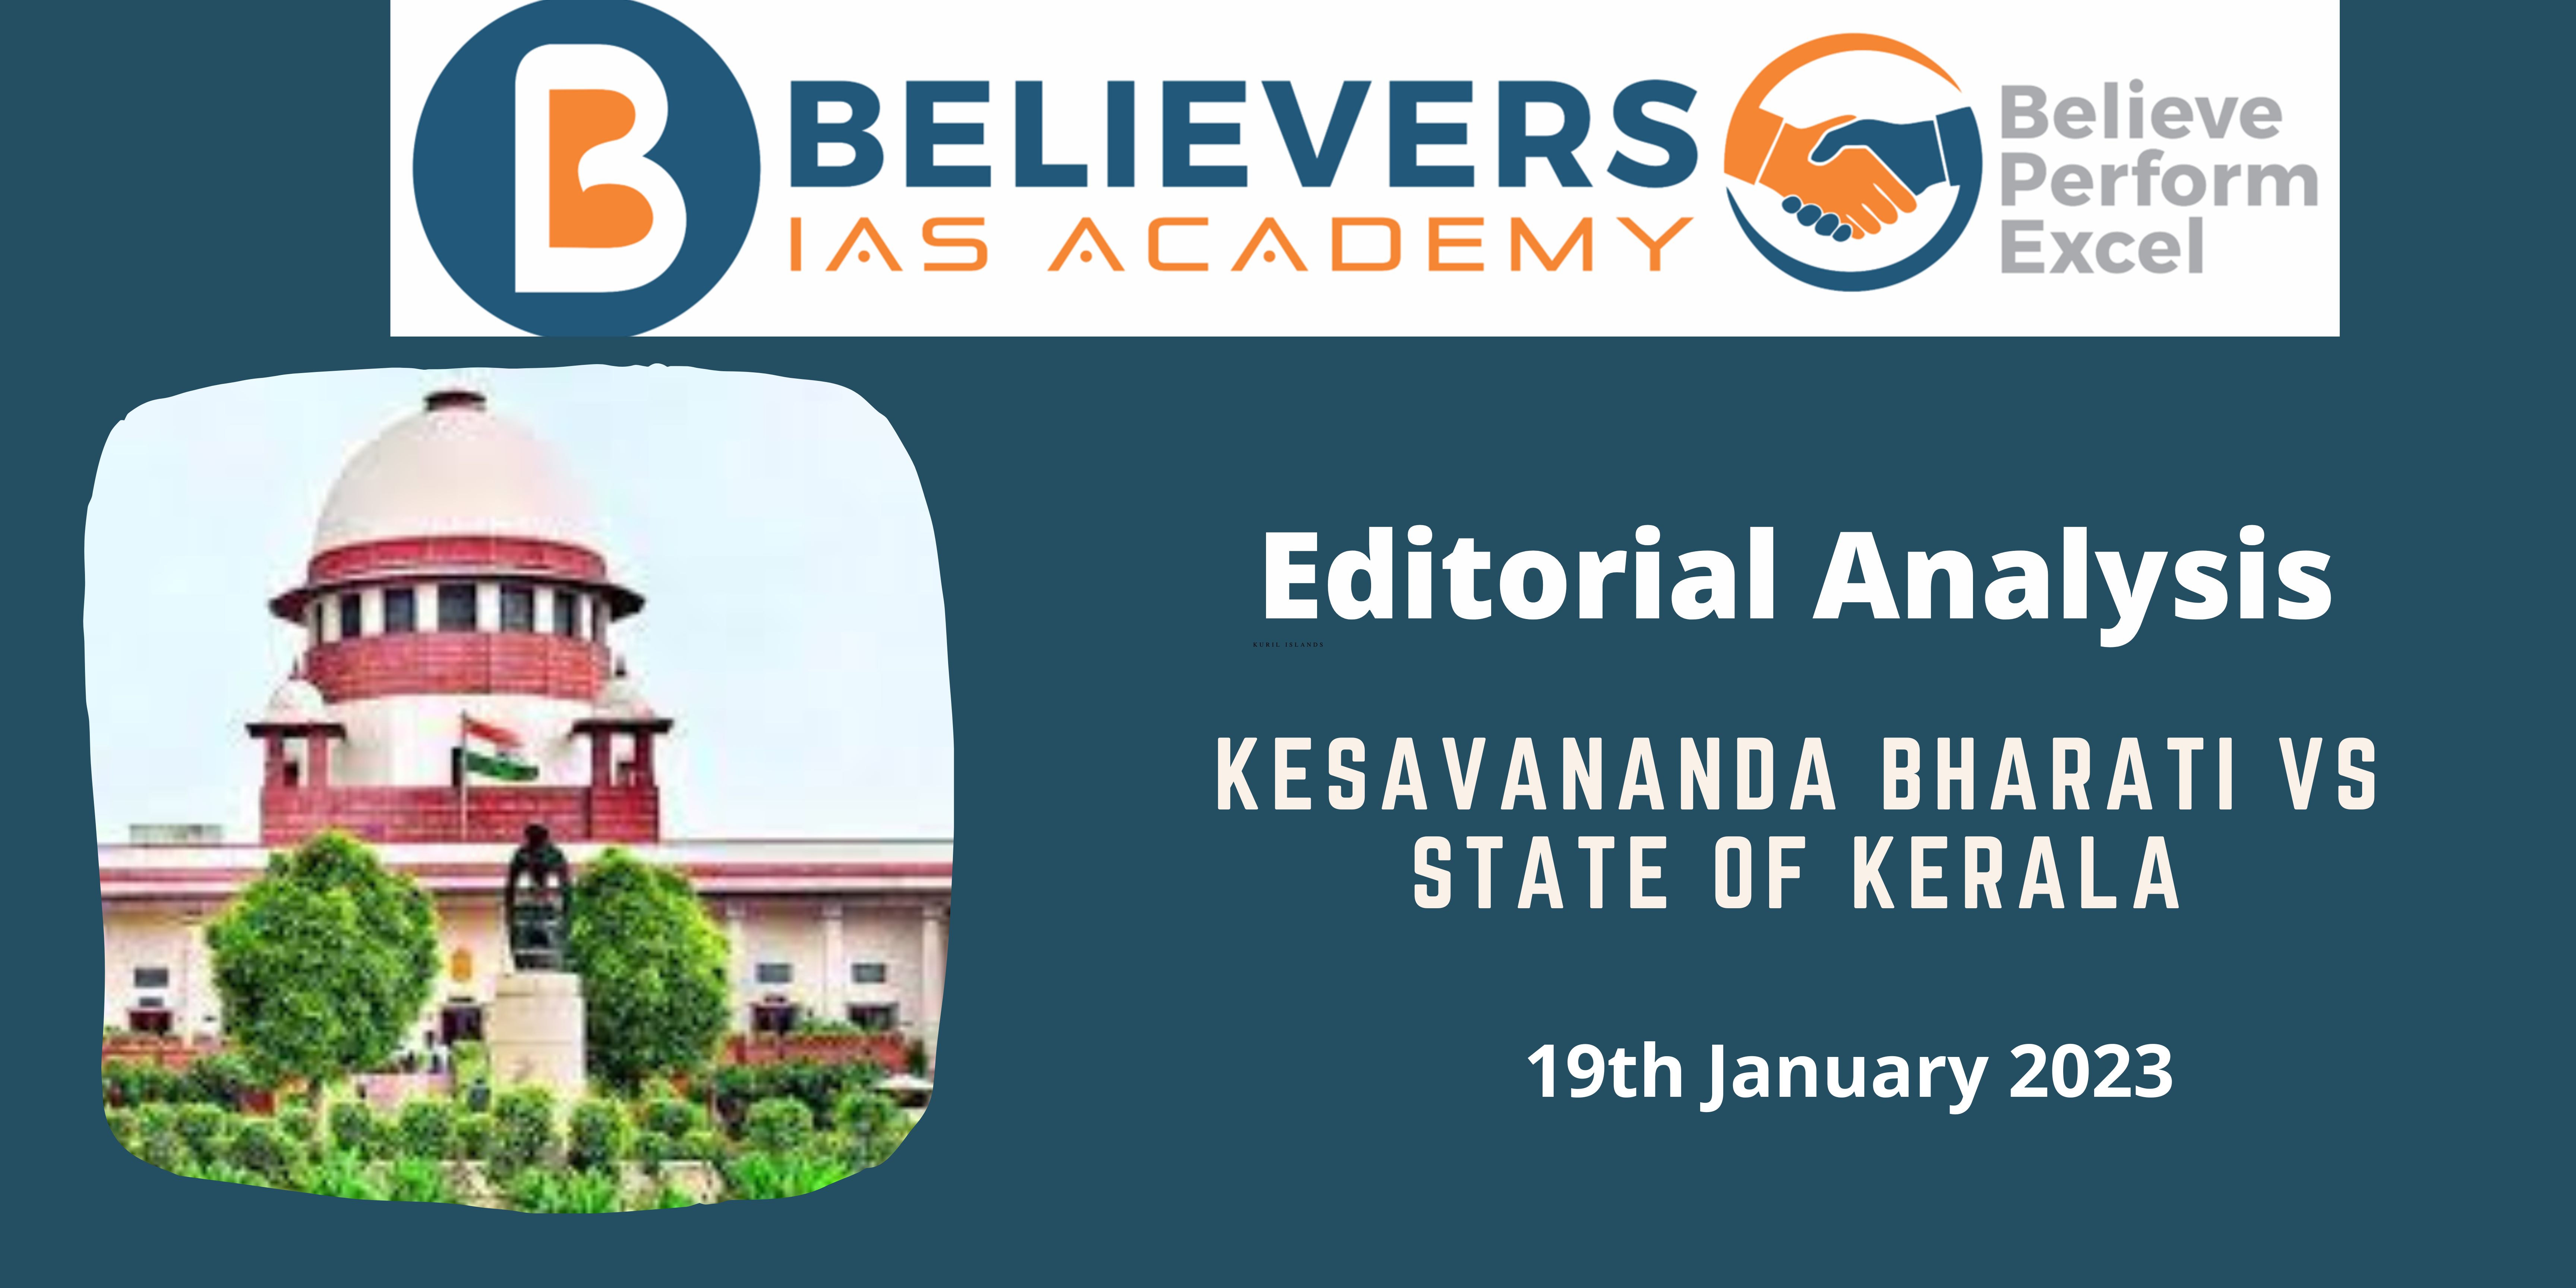 Kesavananda Bharati vs State of Kerala